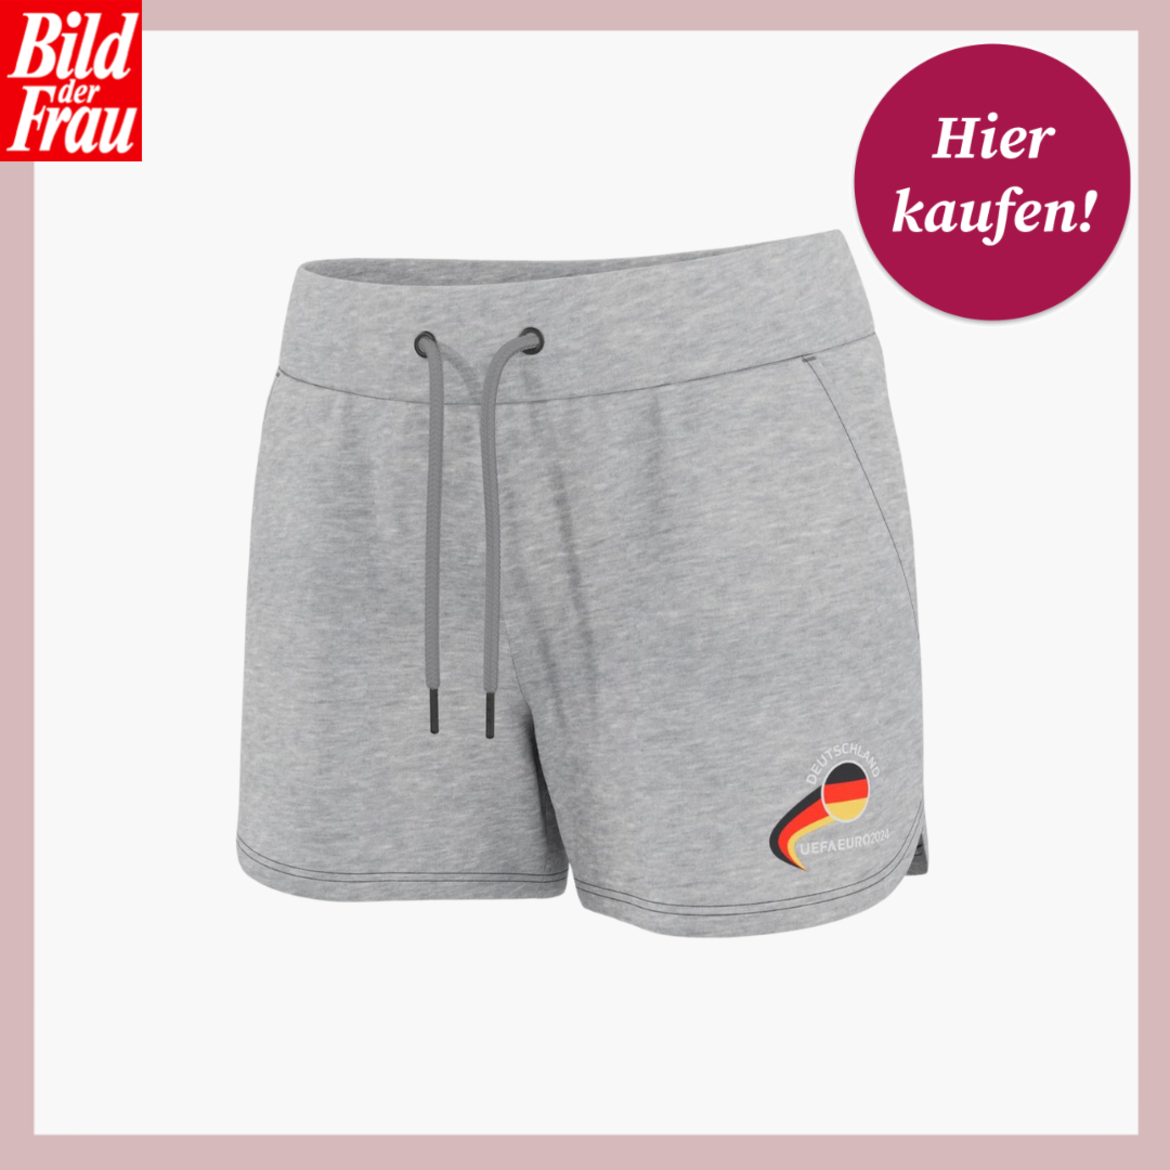 Werbebild von grauer Shorts. Sie hat einen Gummizug und eine Deutschlandflagge auf dem linken Bein | © Lidl